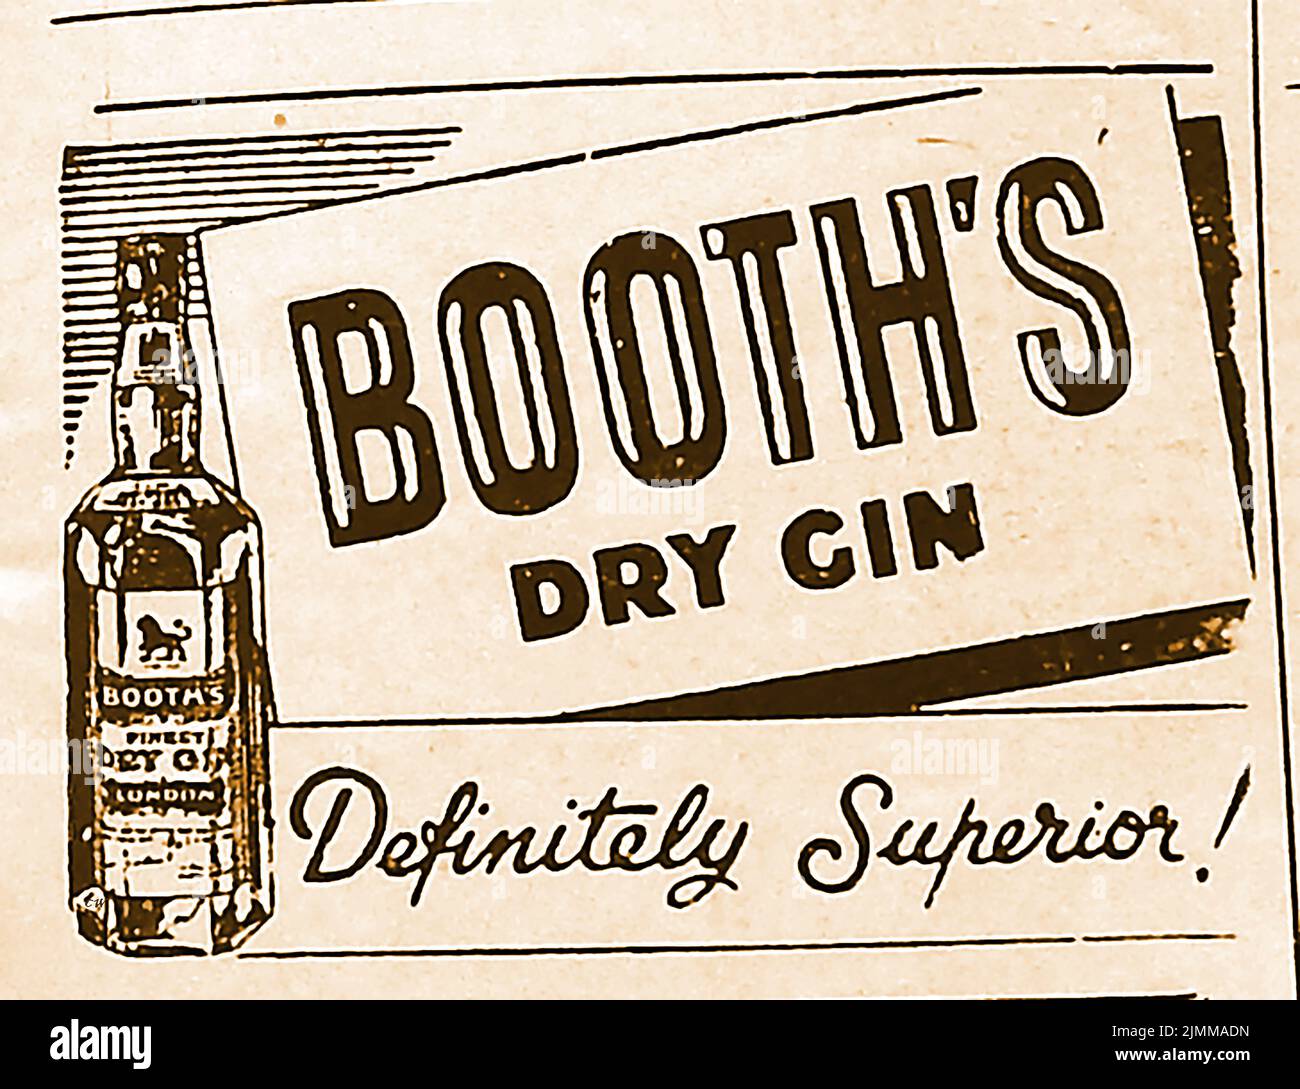 Eine (nach dem Krieg) britische Werbung für Stände Dry Gin, eine Marke aus London Dry Gin, die von der Booth-Familie aus Lincolnshire um 1740 gegründet wurde und in einer sechseckigen Glasflasche mit dem Wappenkamm der Booth-Familie verkauft wurde. Es wurde bekannt als der Gentleman's Drink und war ein bekannter Favorit der britischen Königsfamilie. Die Marke, die sich im Besitz von Diageo Spirits befindet, stellte 2017 die Produktion ein und wurde an die amerikanische Sazerac Drinks Company verkauft Stockfoto